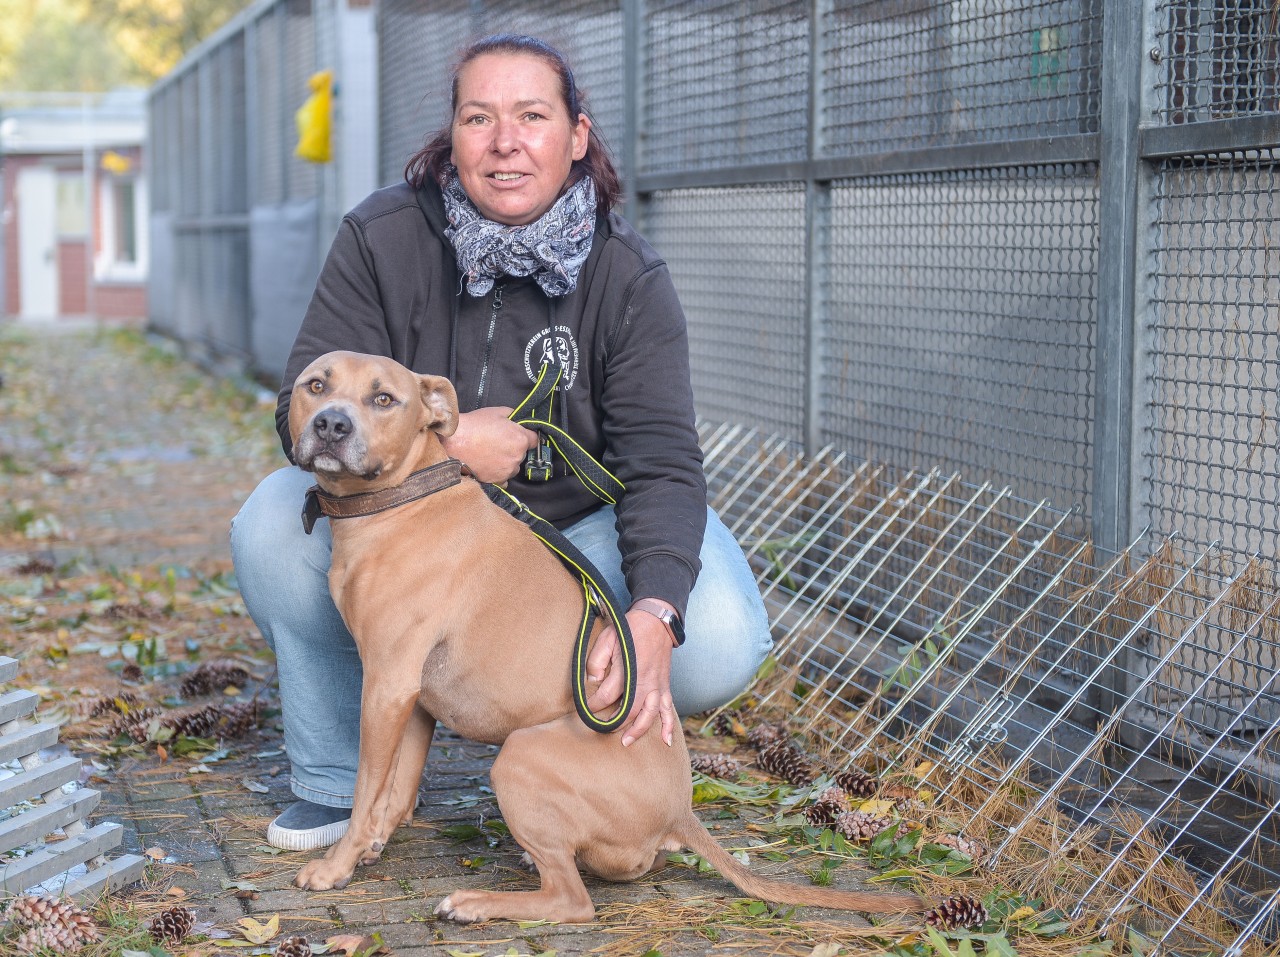 Jeanette Gudd, Tierheim-Leiterin in Essen, freut sich über die Hundesteuer-Befreiung für Tierheim-Hunde wie American Staffordshire Terrie Robert. (Archivbild)